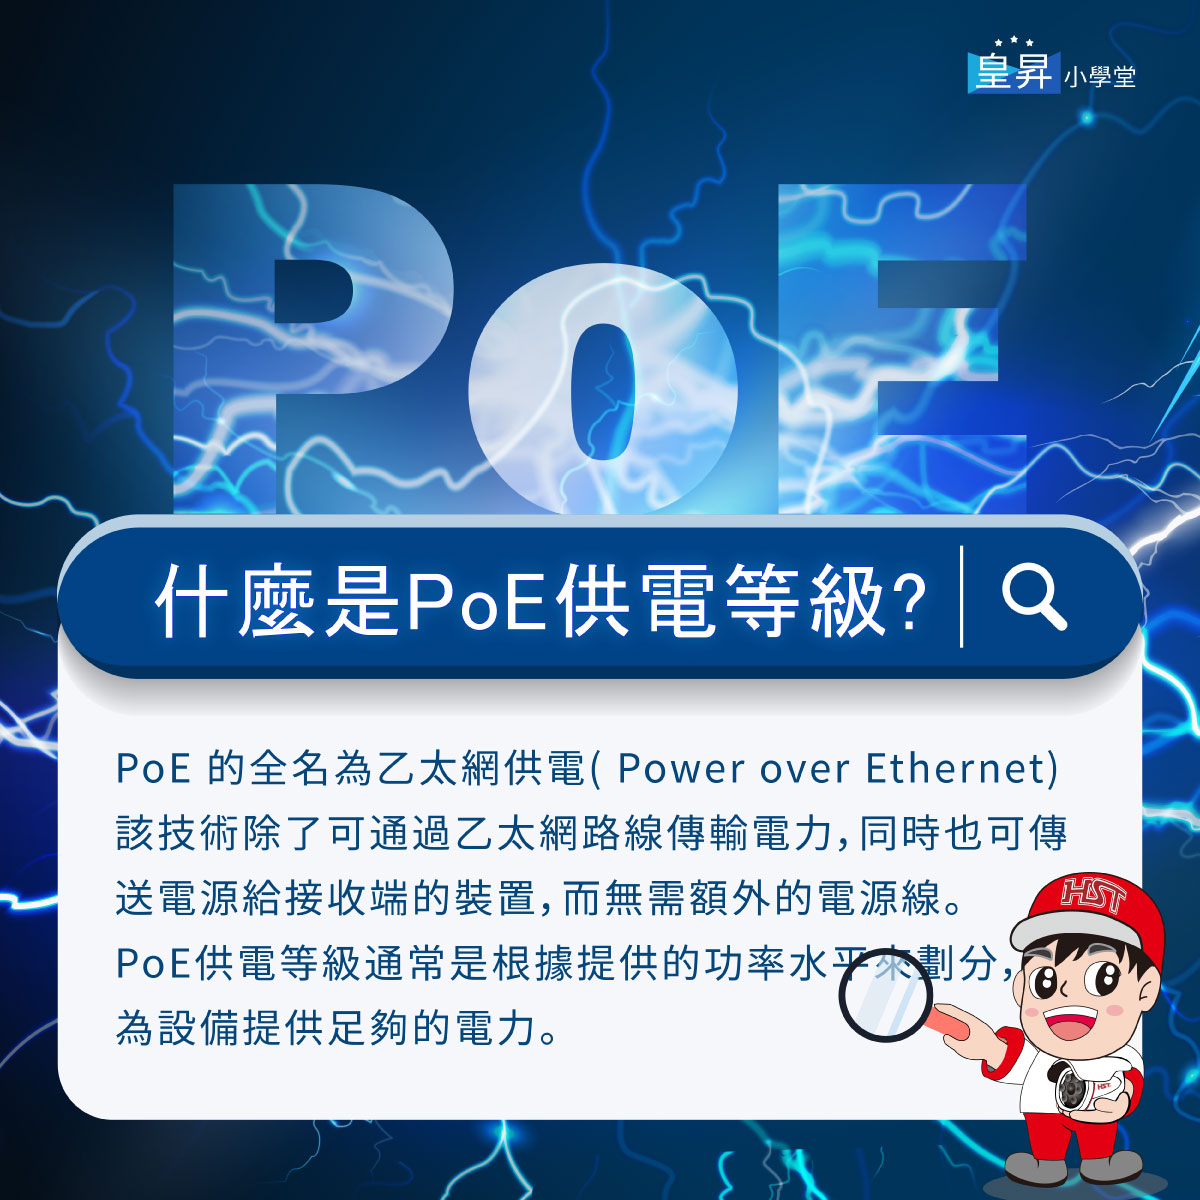 什麼是PoE供電等級?